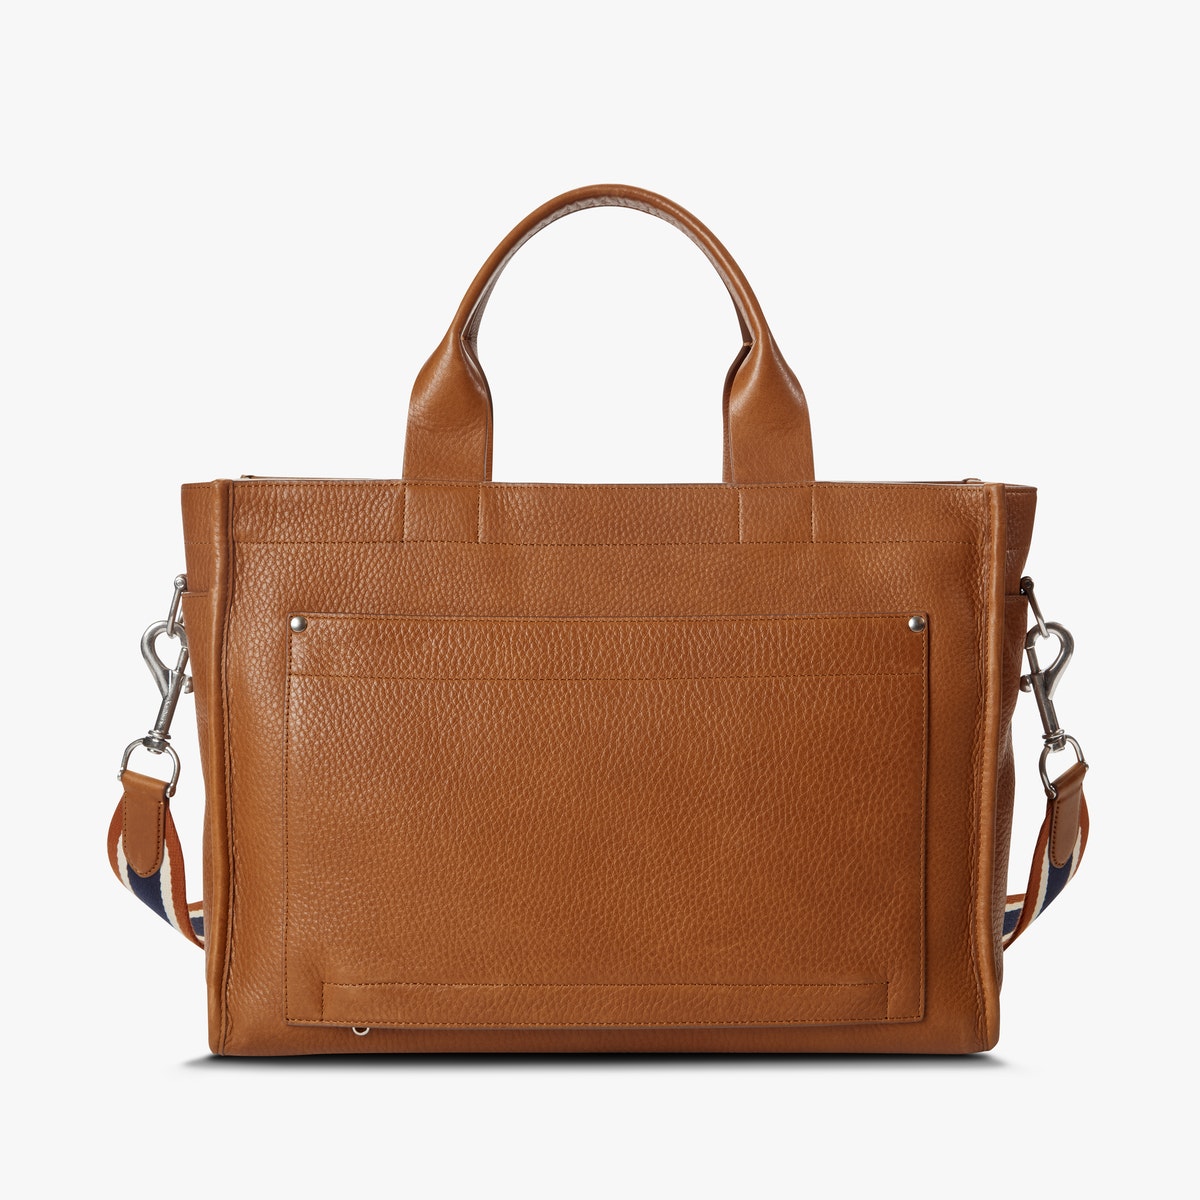 Shinola - "Brief Zip" handbag - Tan